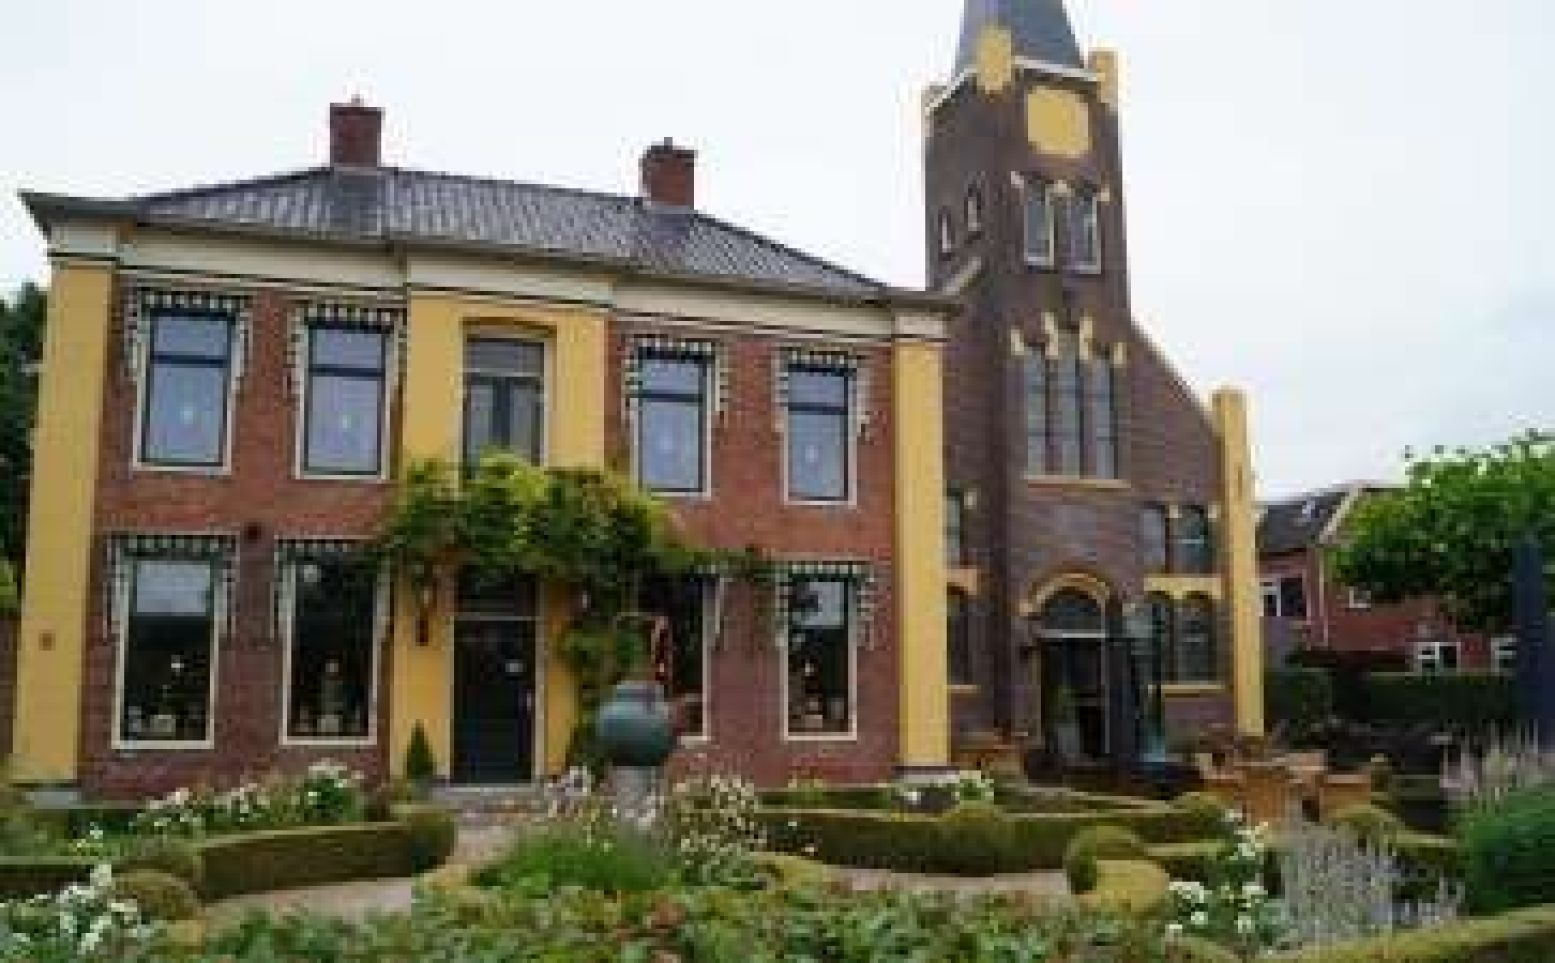 De Theefabriek is gevestigd in de oude kerk van Houwerzijl. Foto: Grytsje Anna Pietersma